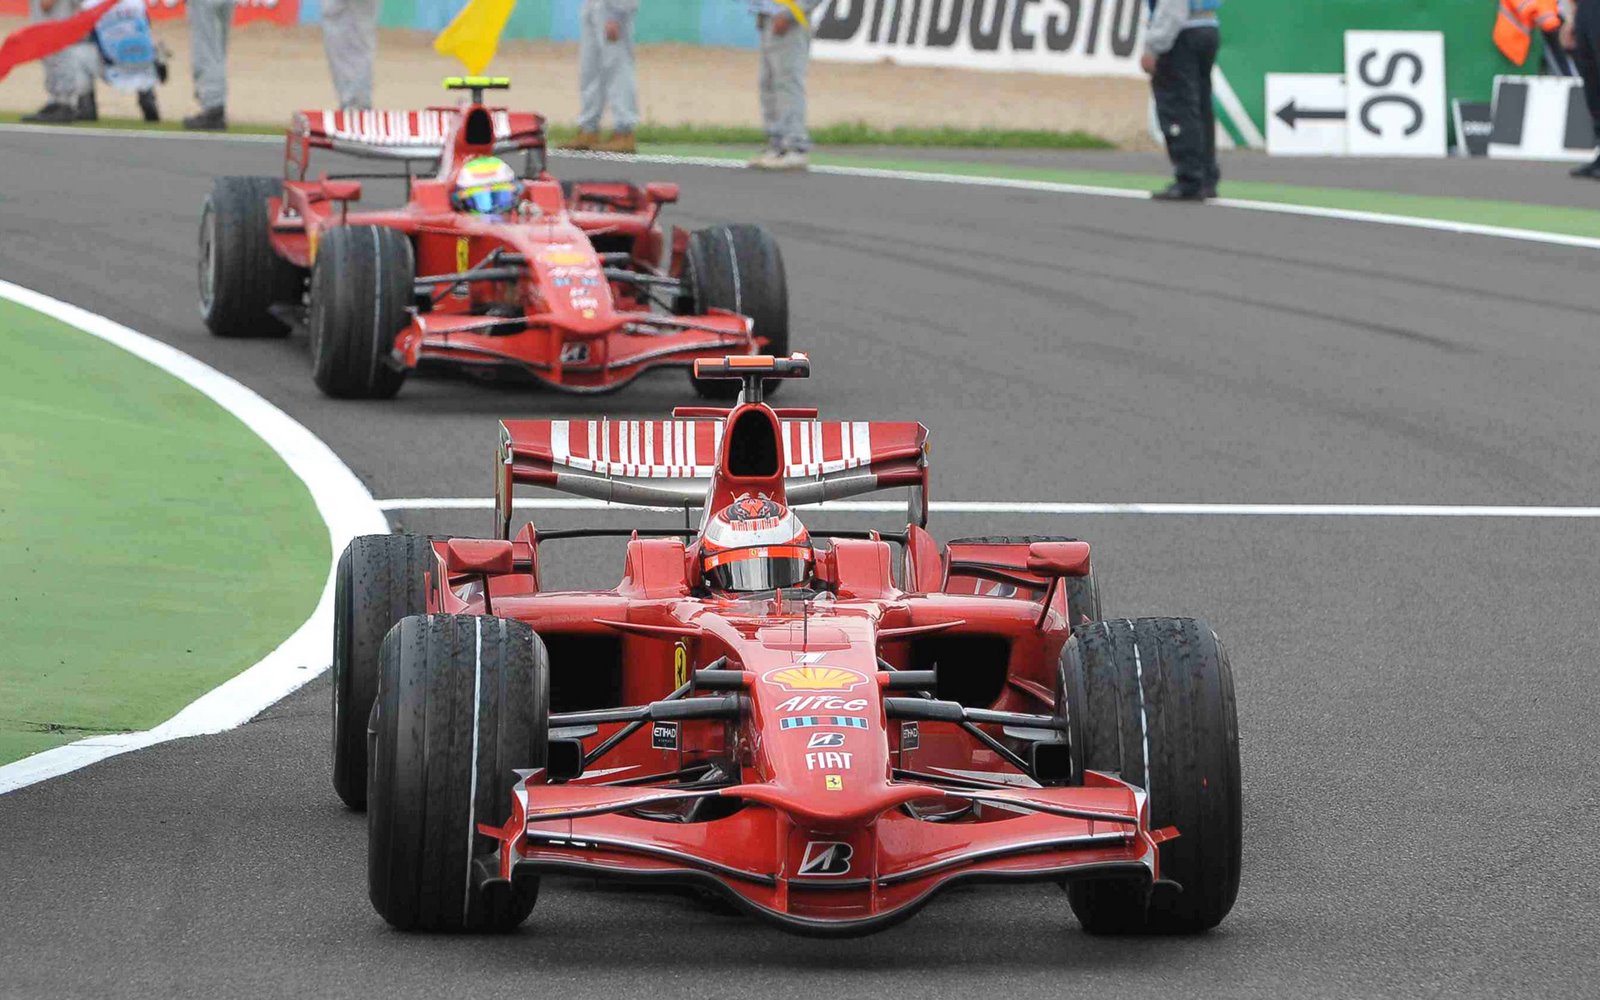 [Kimi+Räikkönen+Filipe+Massa+Ferrari+Sunday+Race+in+France+Magny+Cours,+F1+2008+81.jpg]